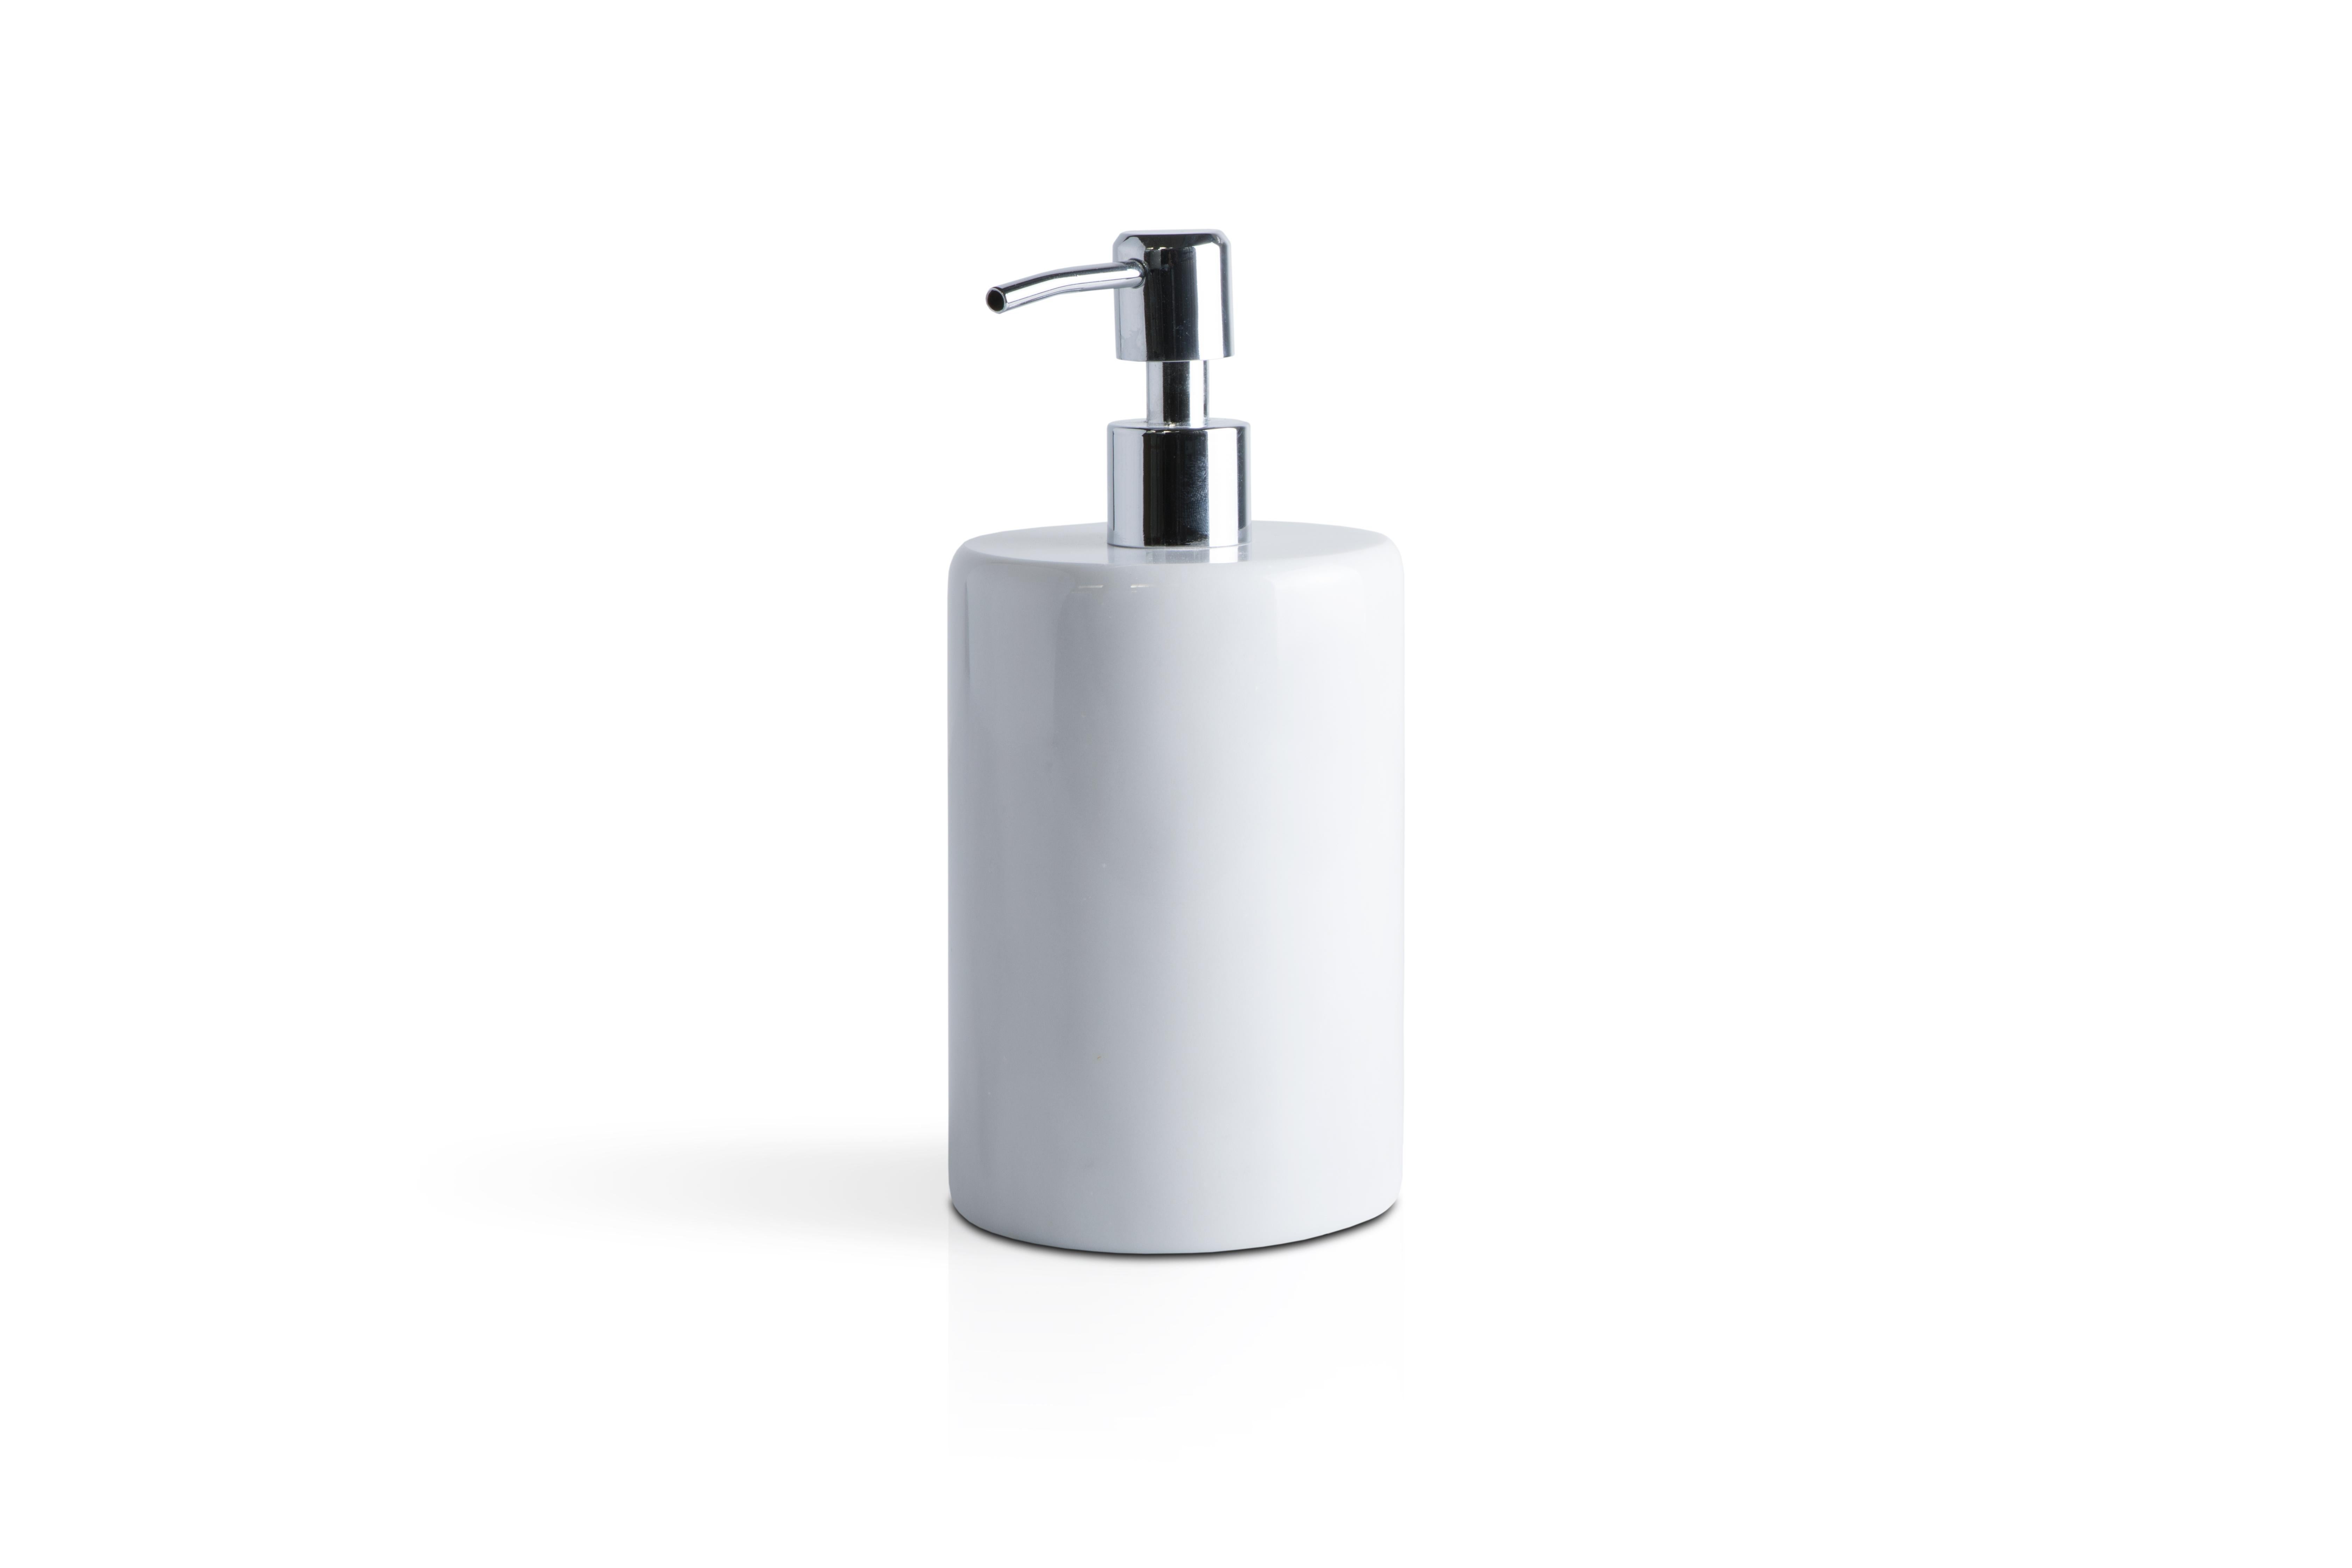 Ein abgerundetes Set für das Badezimmer aus weißem Carrara-Marmor, das Folgendes umfasst: Ein Seifenspender (Durchmesser 9 x 19,5 cm), ein Zahnbürstenhalter (Durchmesser 7 x 12 cm), eine Seifenschale (10 x 2 cm).
Jedes Stück ist in gewisser Weise